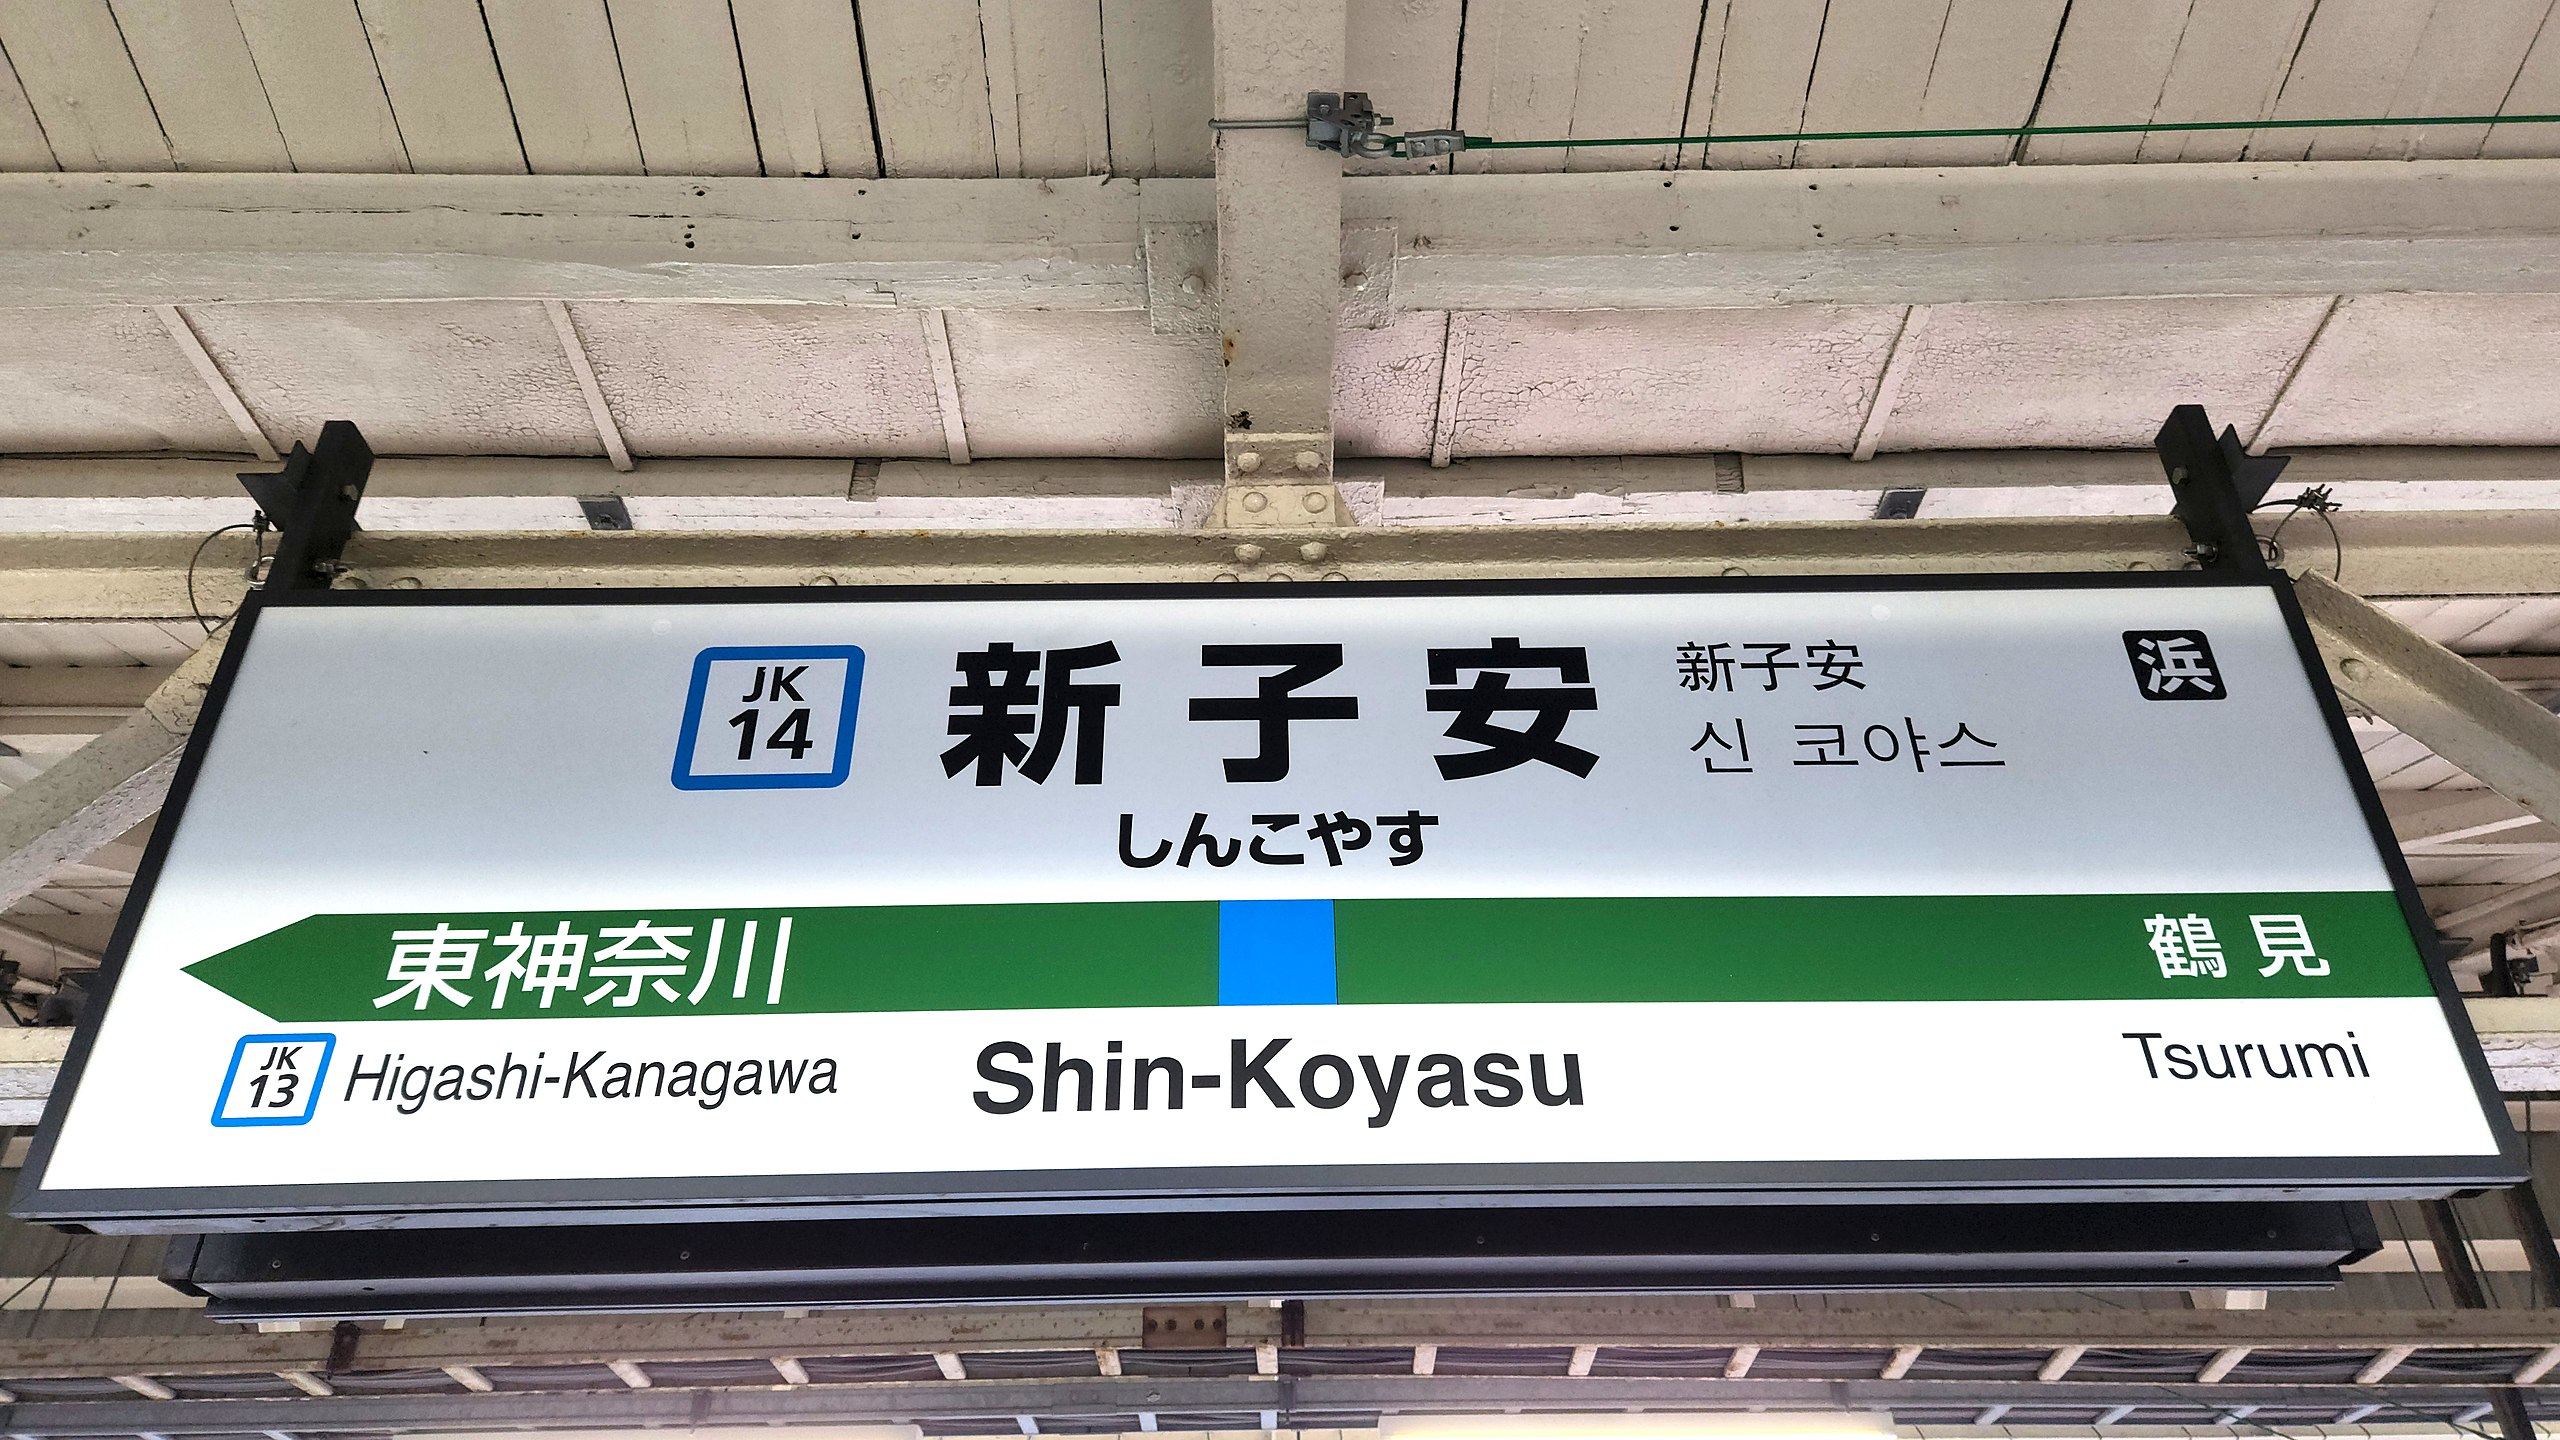 File:JREast-Keihin-tohoku-line-JK14-Shin-koyasu-station-sign 